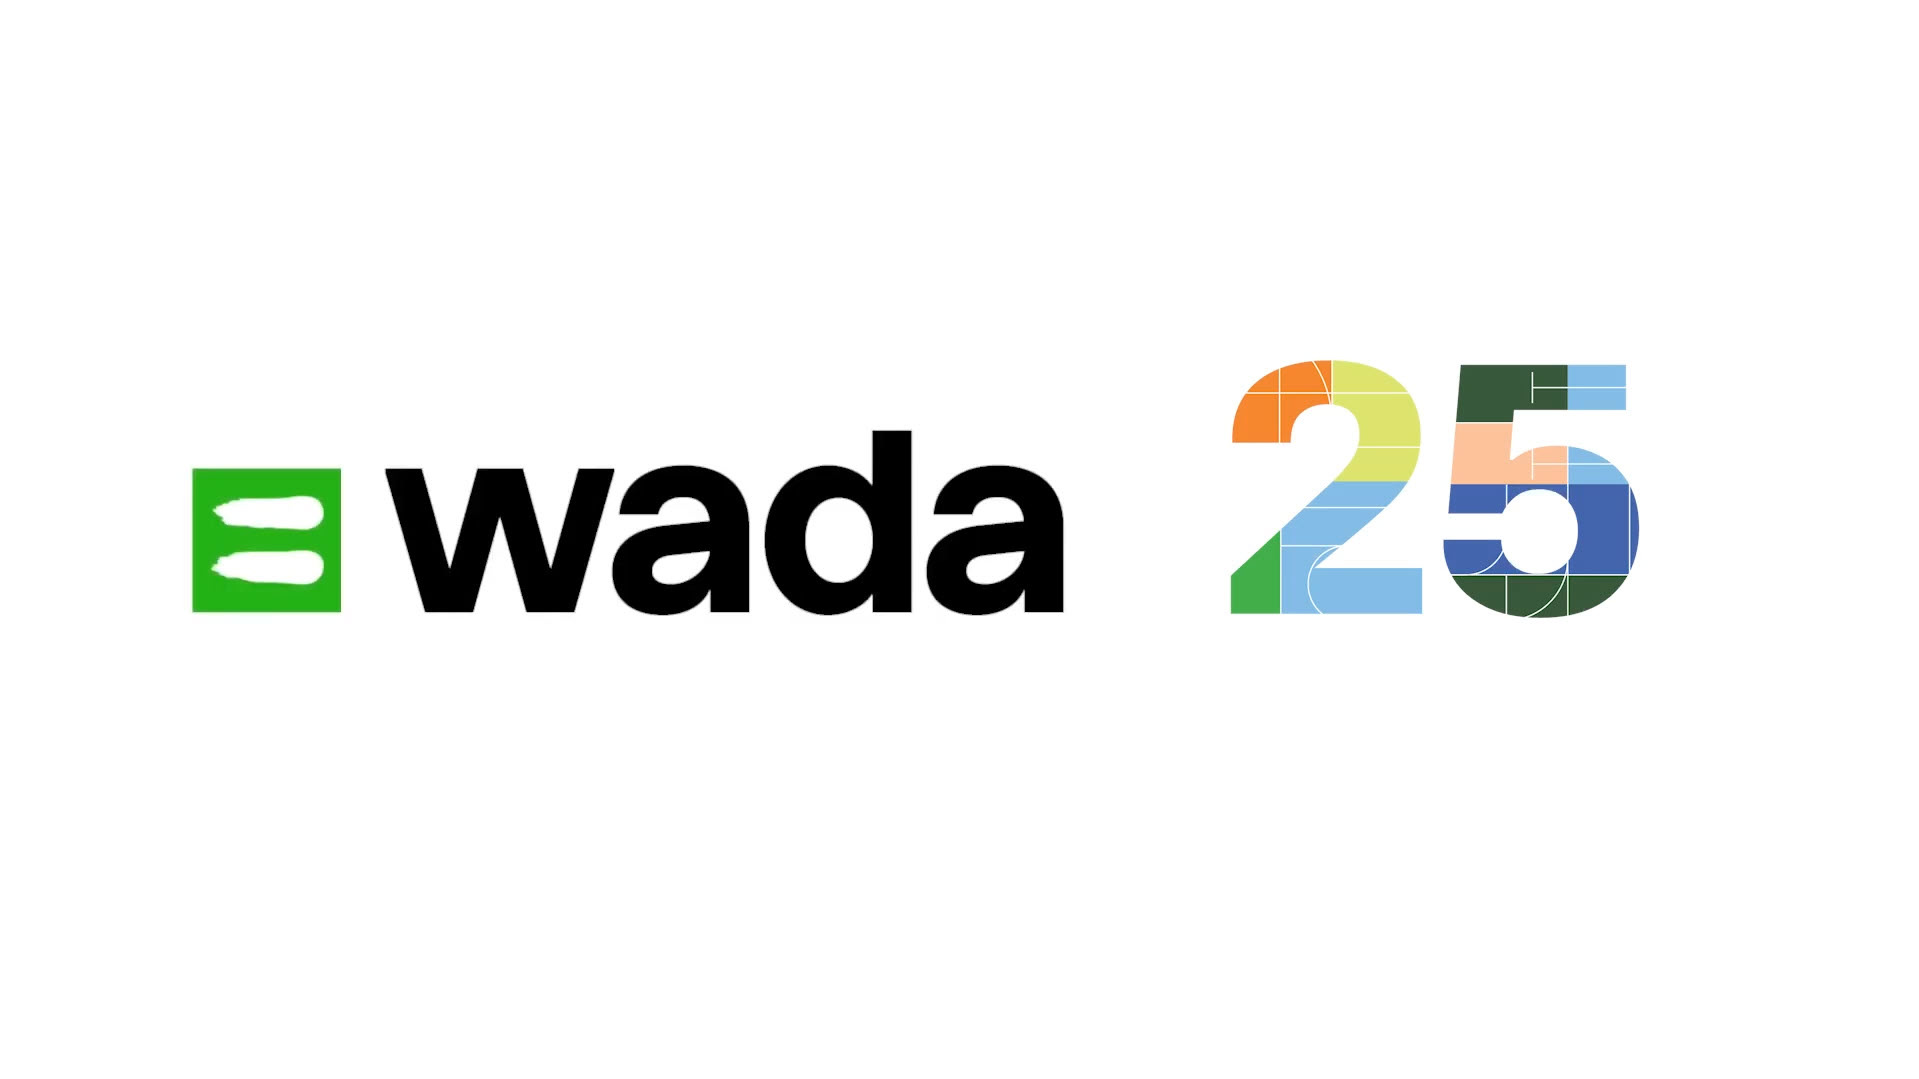 WADA 25 anniversary